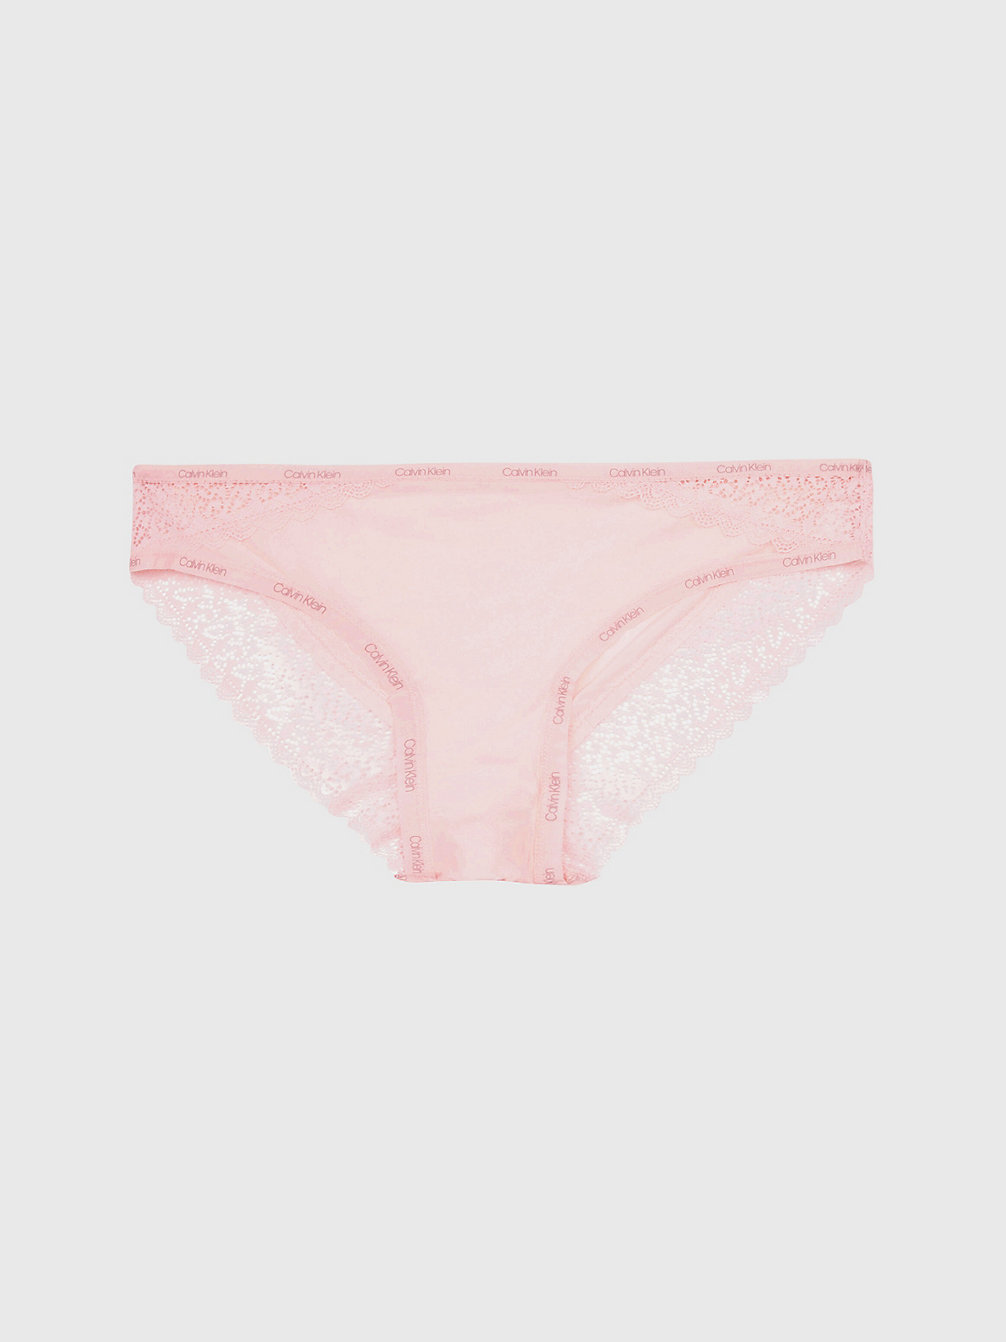 NYMPH'S THIGH Bikini Brief - Flirty undefined women Calvin Klein